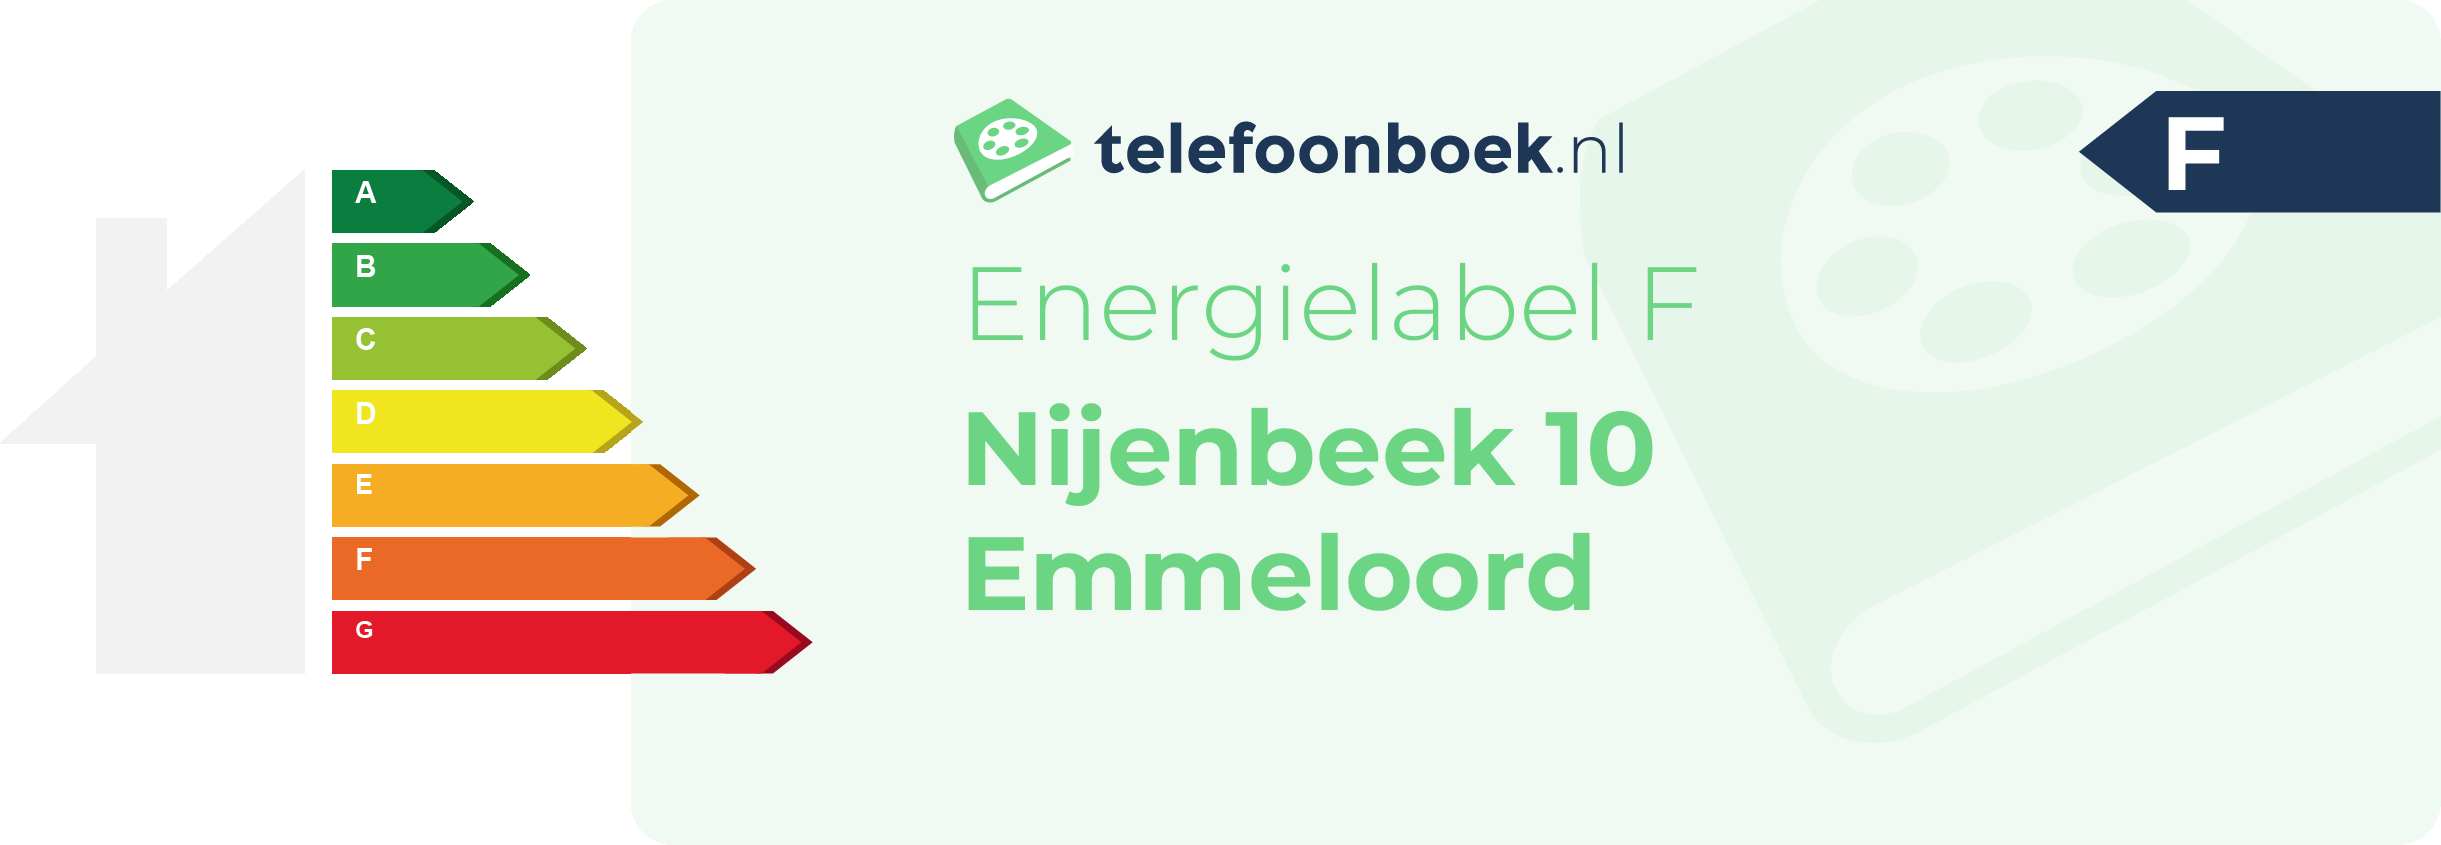 Energielabel Nijenbeek 10 Emmeloord